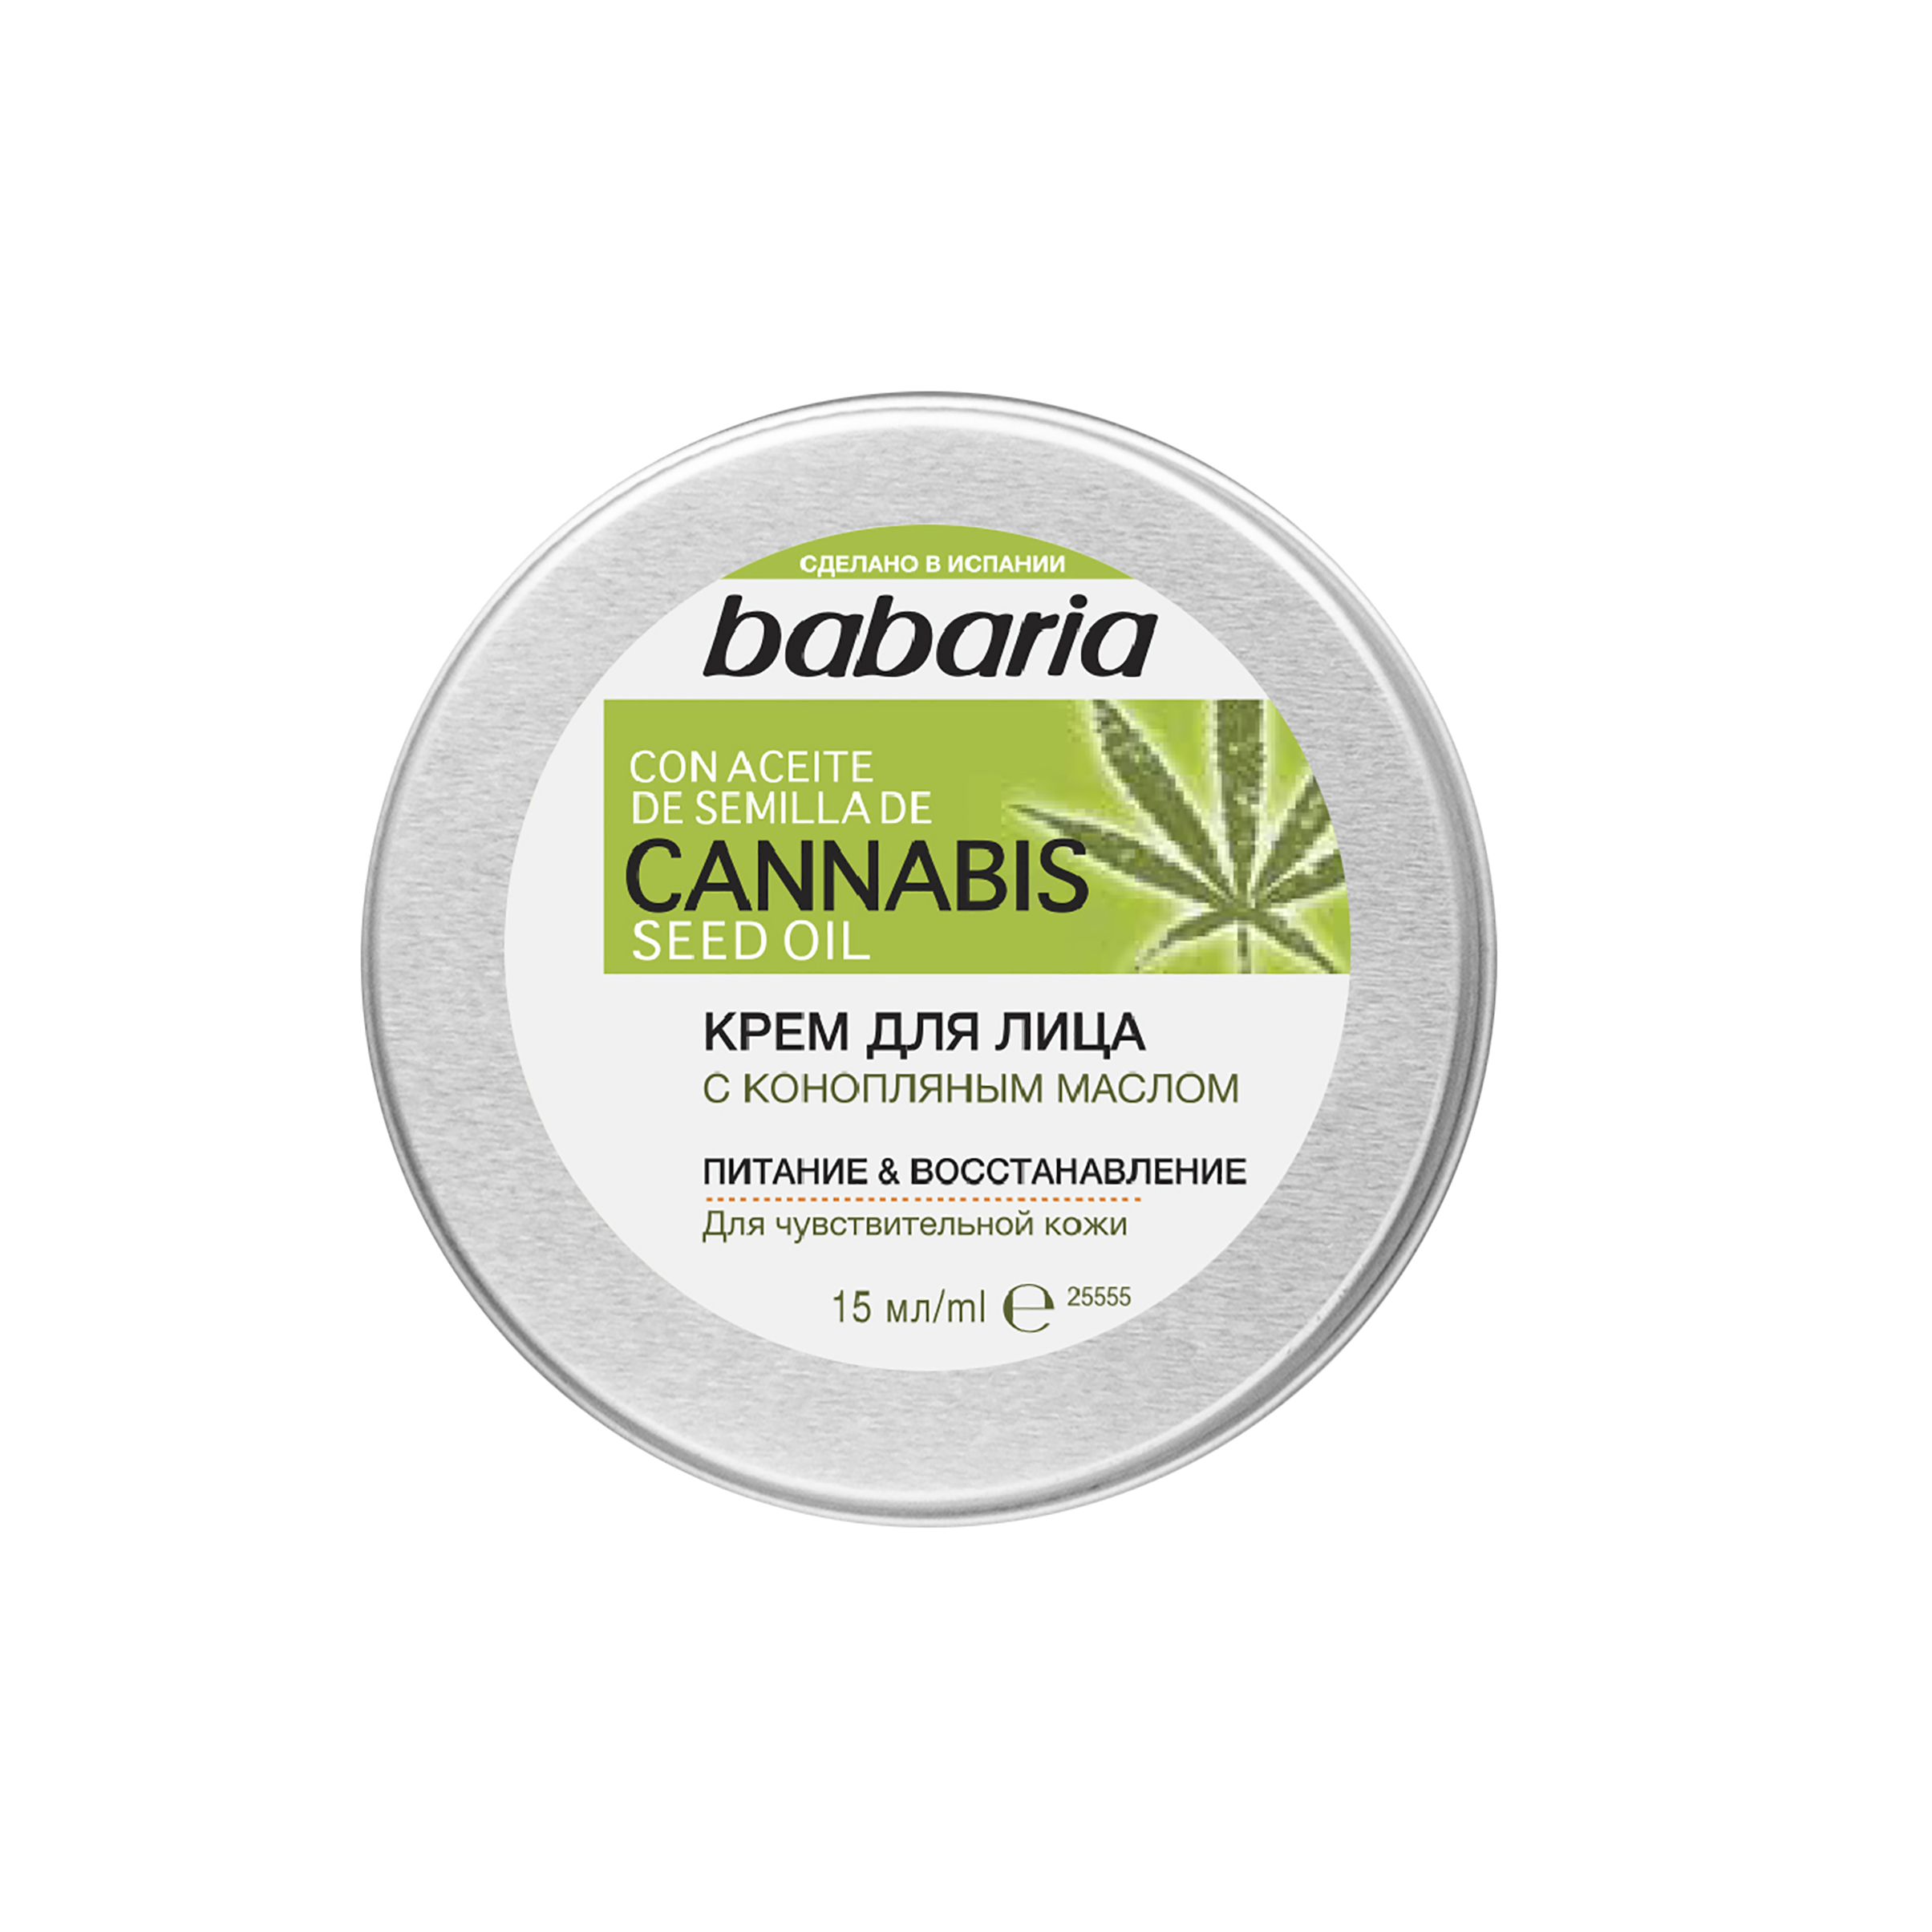 Крем для лица Babaria Cannabis Seed Oil с конопляным маслом, 50 мл набор для лица babaria с гиалуроновой кислотой крем сыворотка сыворотка в ампулах